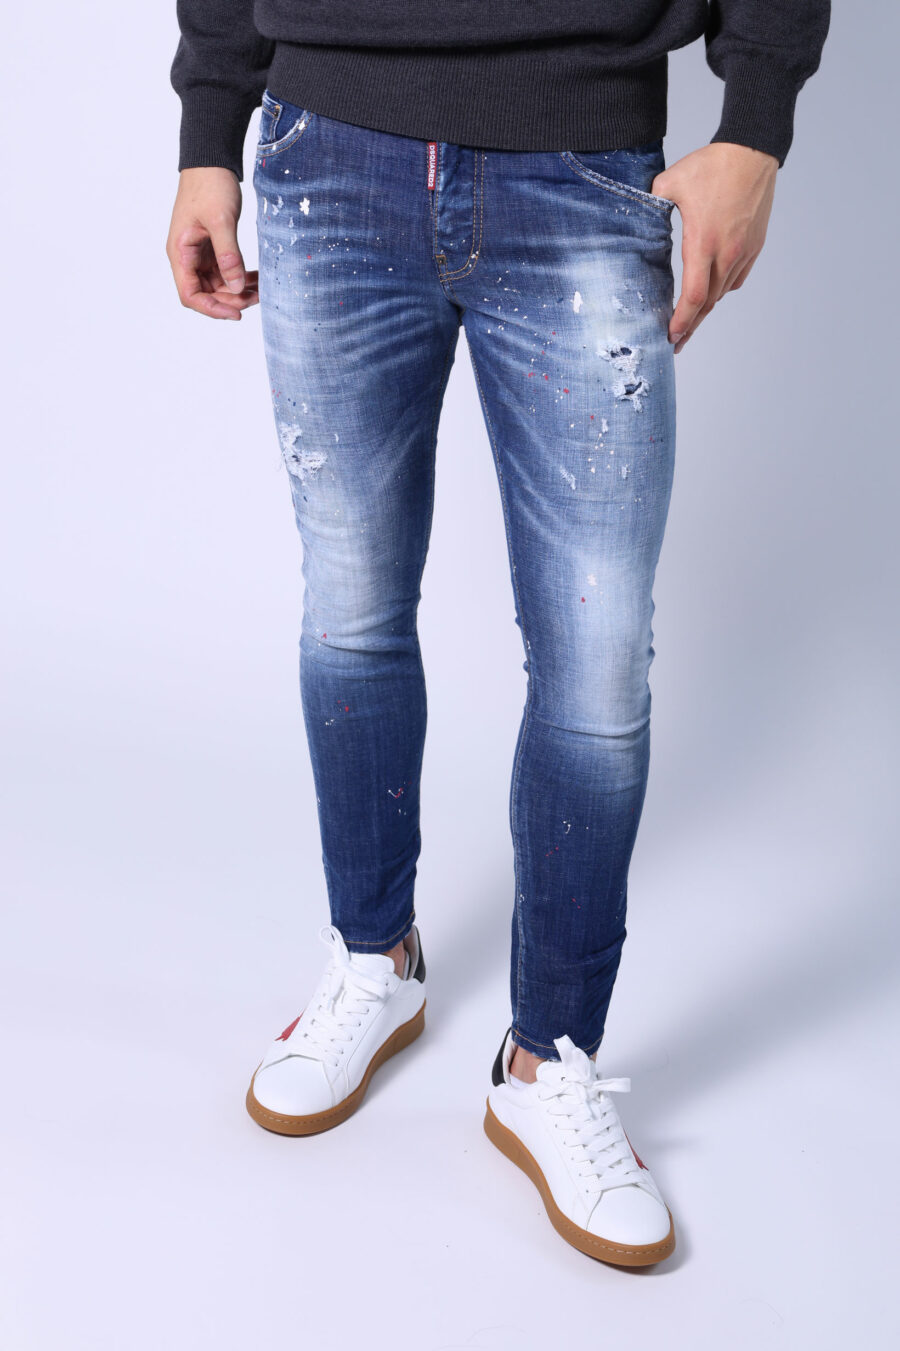 Jeans bleu "skater" semi-usé avec peinture et déchirures - Sans titre Catalogue 05391